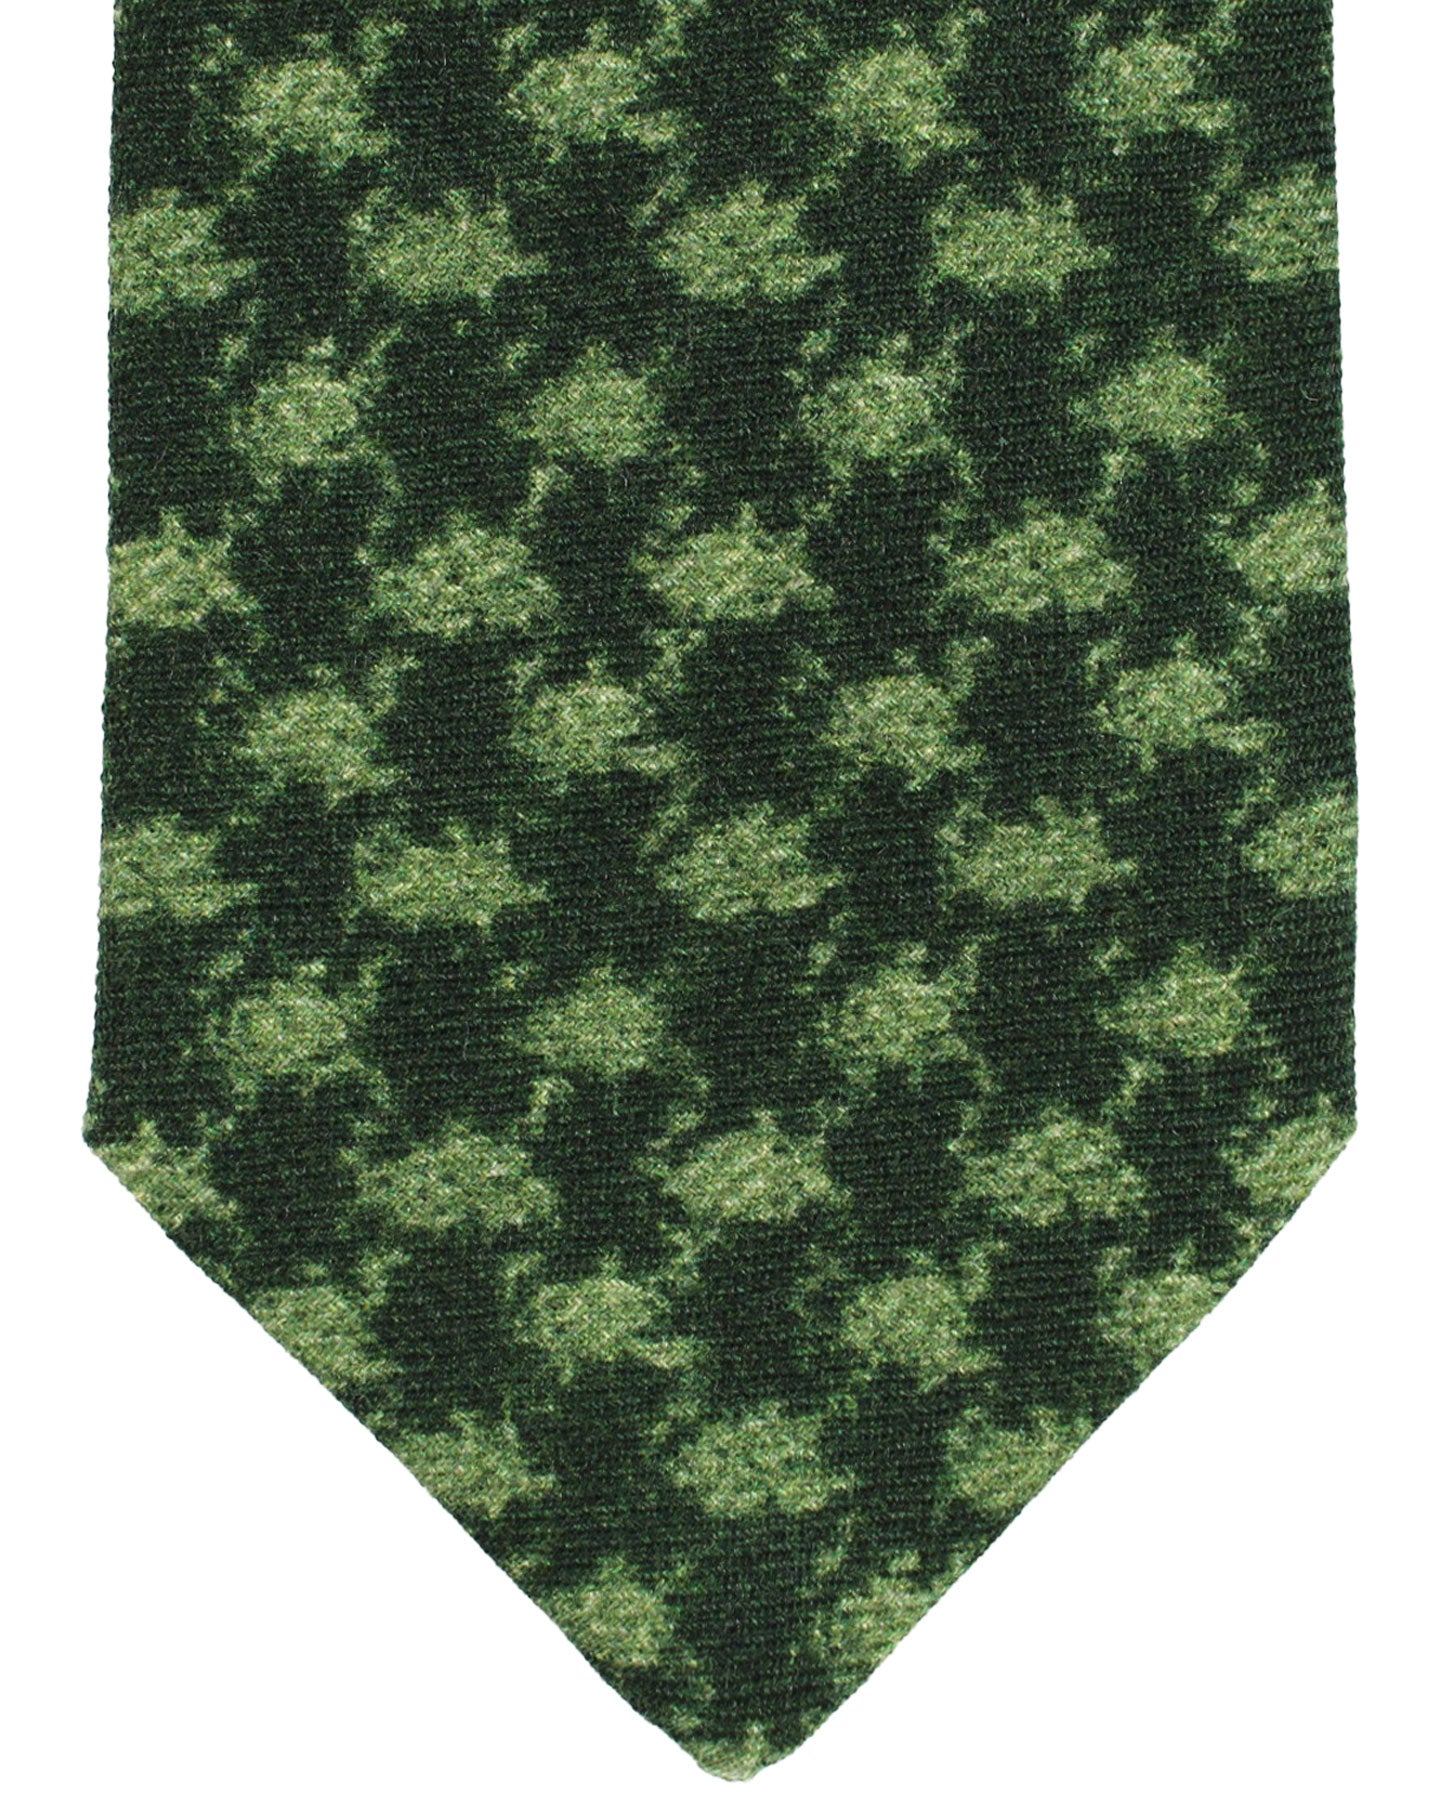 Kiton Wool Tie Green Design - Sevenfold Necktie